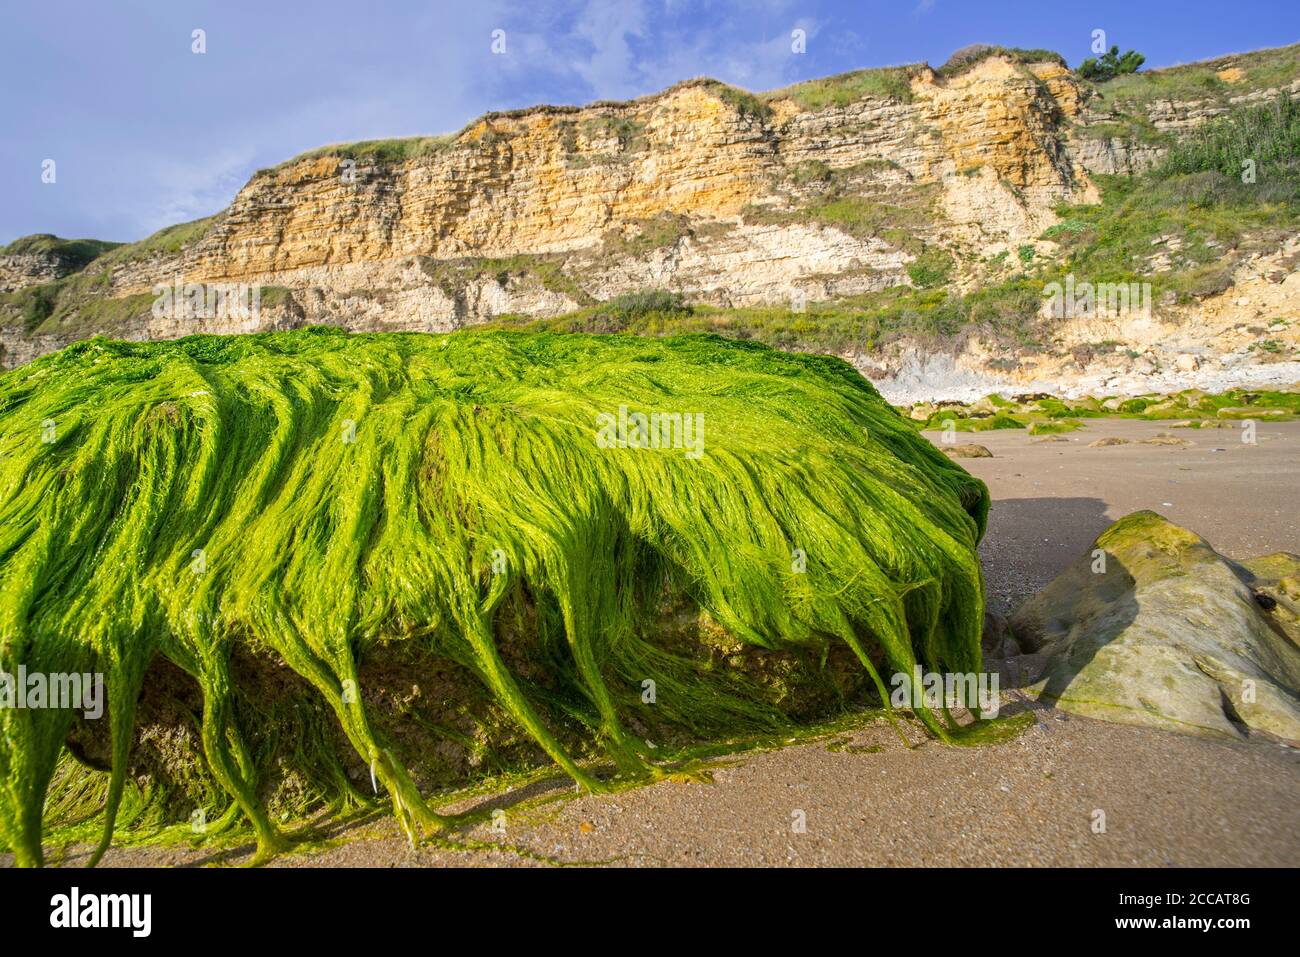 Klumpen von Enteromorpha spec. / Ulva spec., Grünalge Arten von Kutweed (Ulvaceae) wächst auf Felsen am Strand bei Ebbe, Normandie, Frankreich Stockfoto